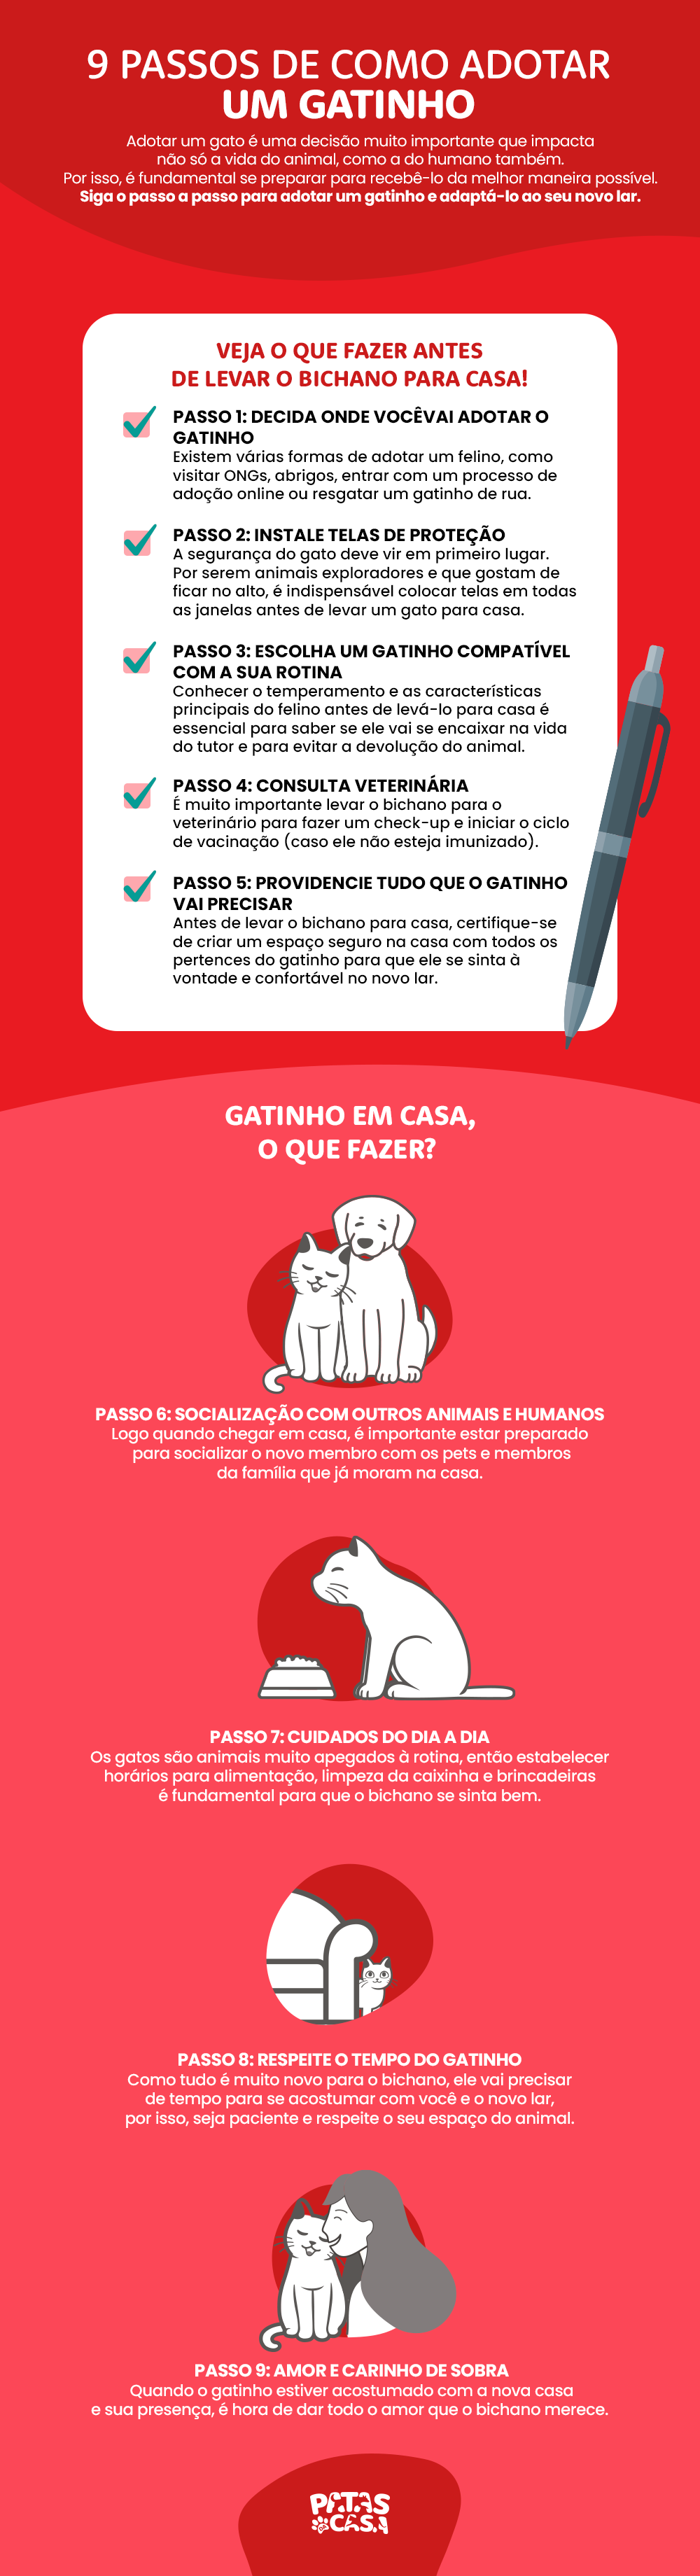 Infográfico descrevendo as etapas para adotar um gato